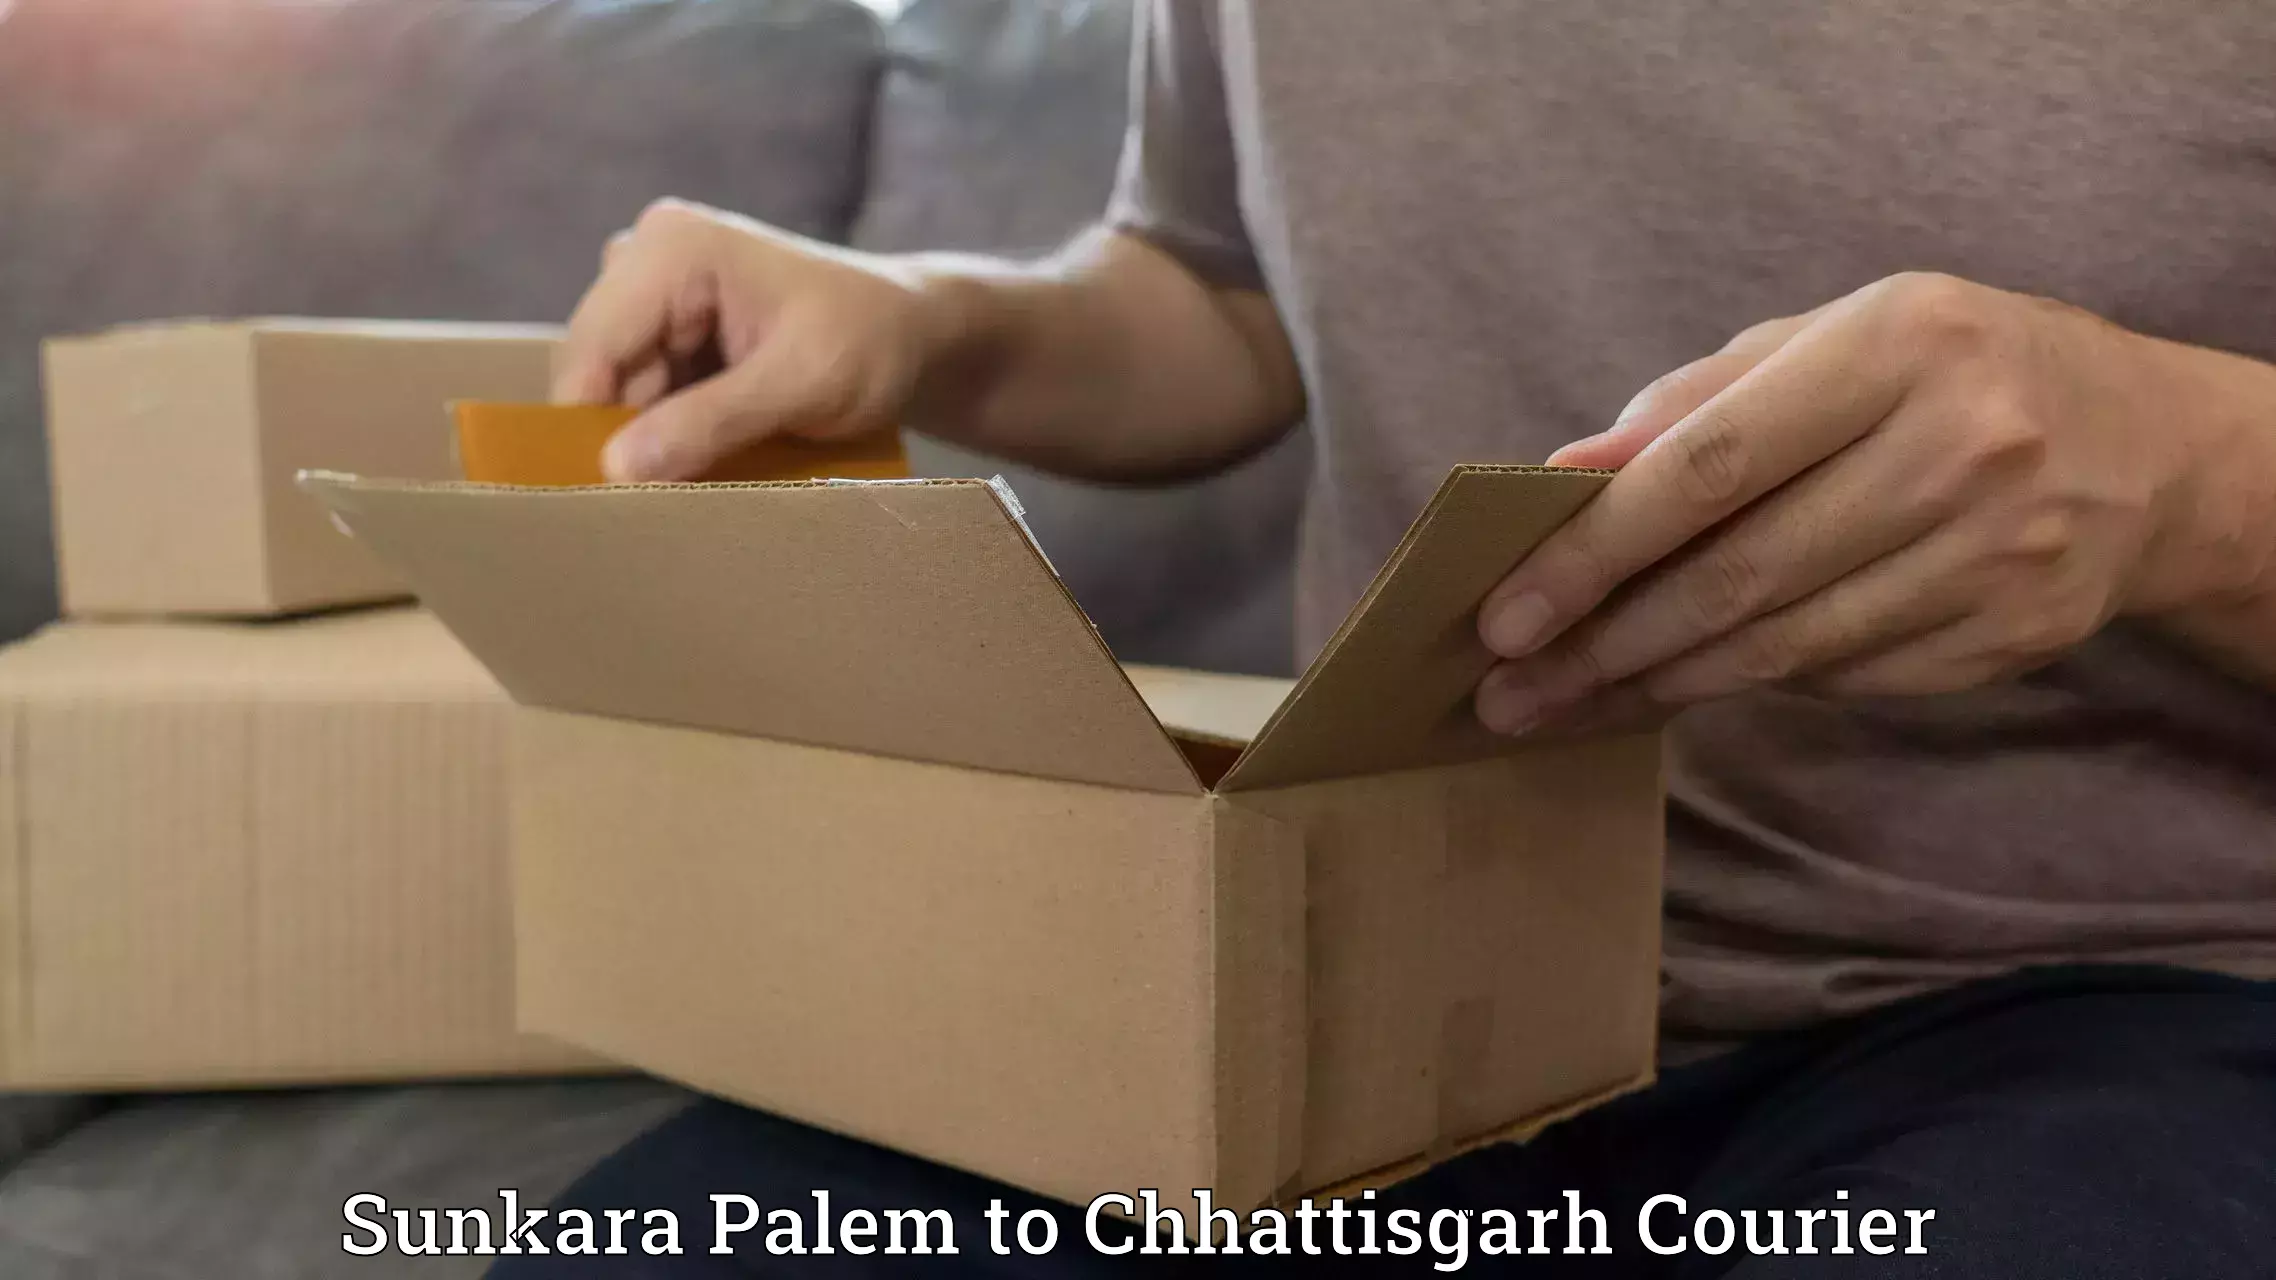 Courier service booking Sunkara Palem to Chhattisgarh